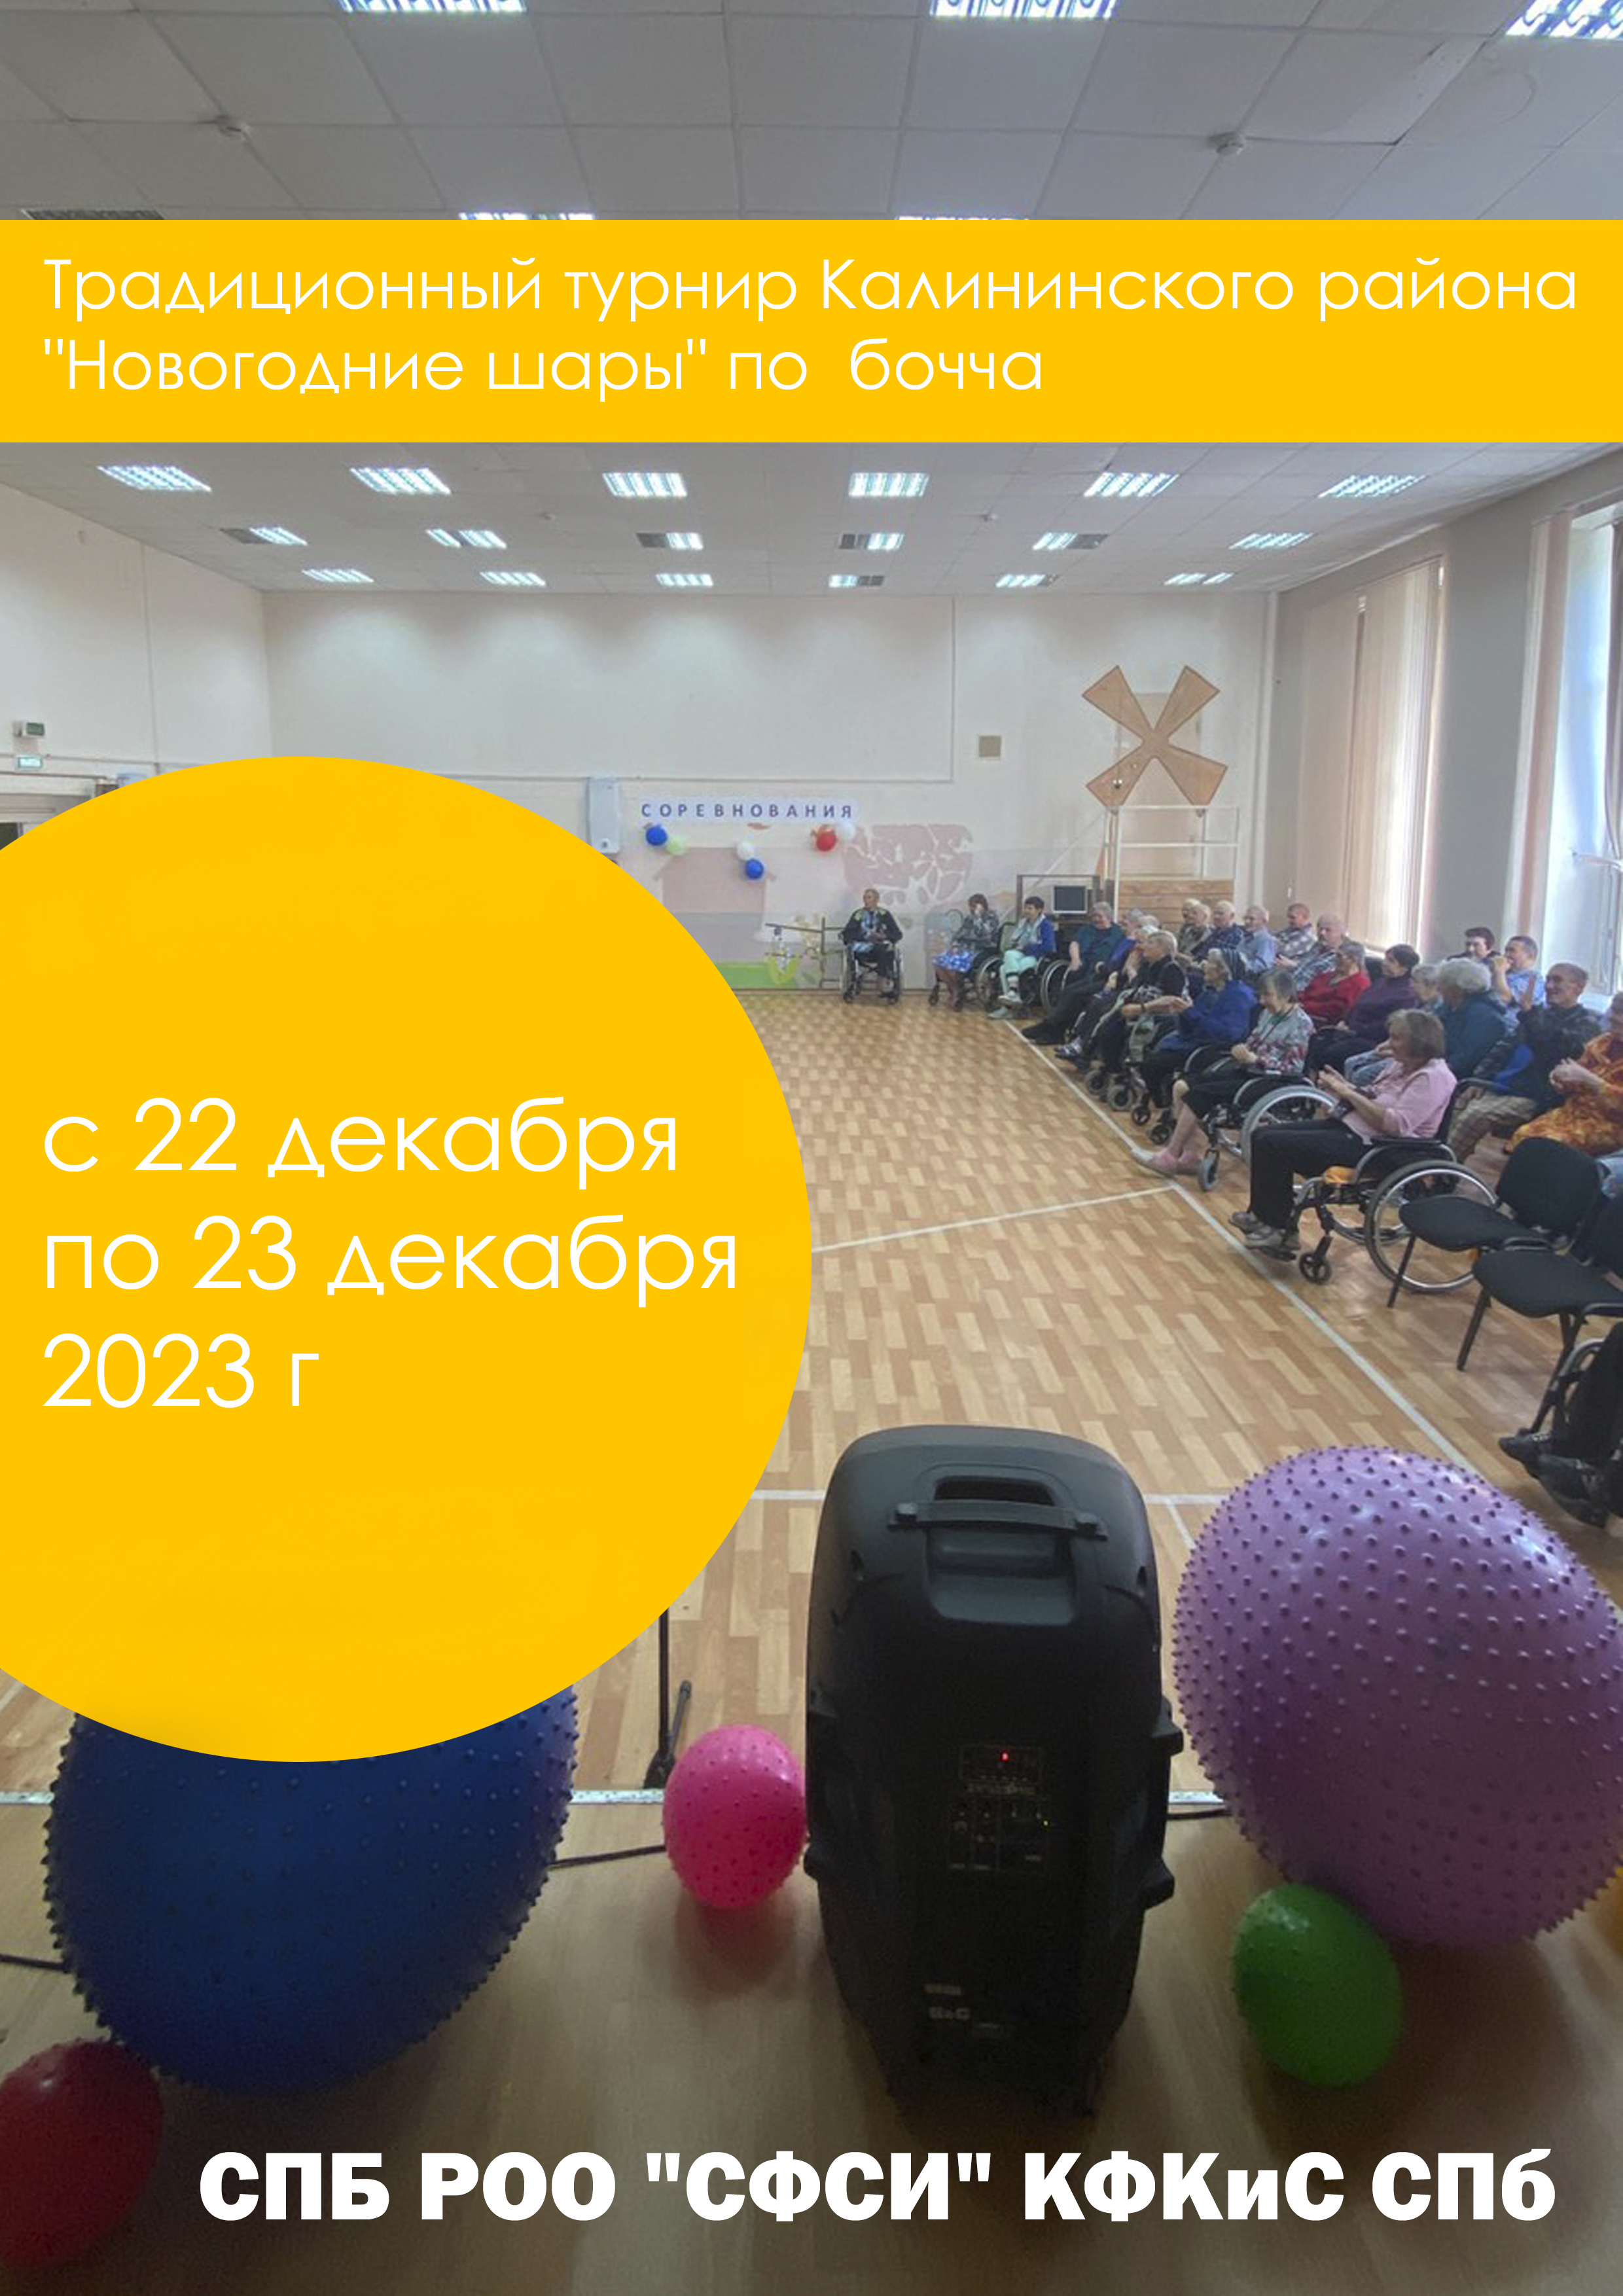 Традиционный турнир Калининского района "Новогодние шары" по бочча 2023 22  δεκεμβρίου
 2023  έτος
 